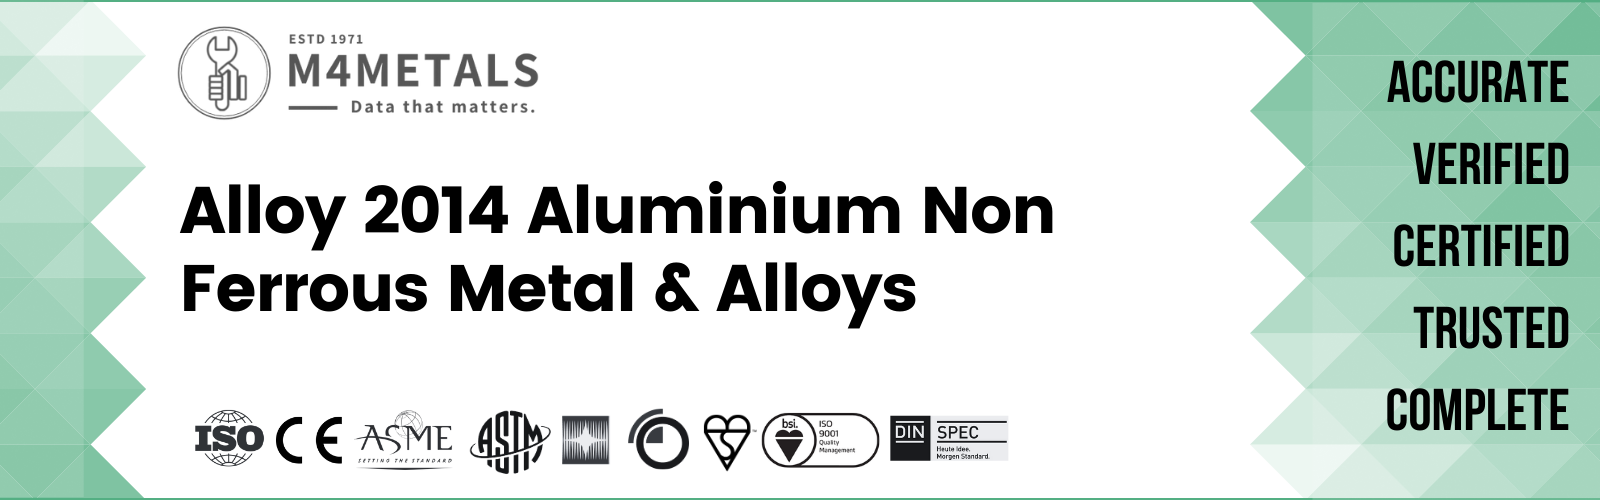 Aluminium Alloy 2014